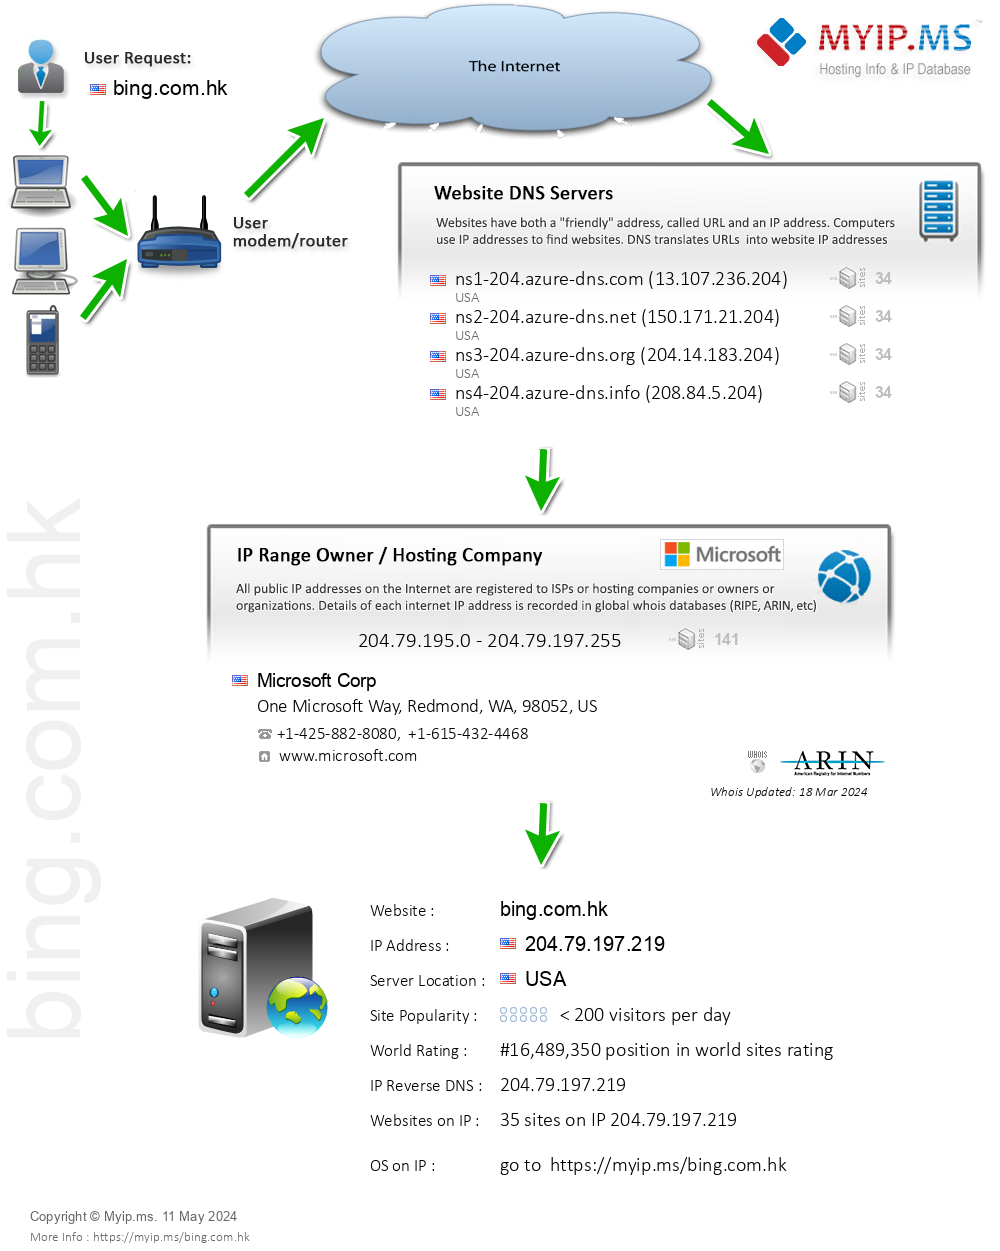 Bing.com.hk - Website Hosting Visual IP Diagram